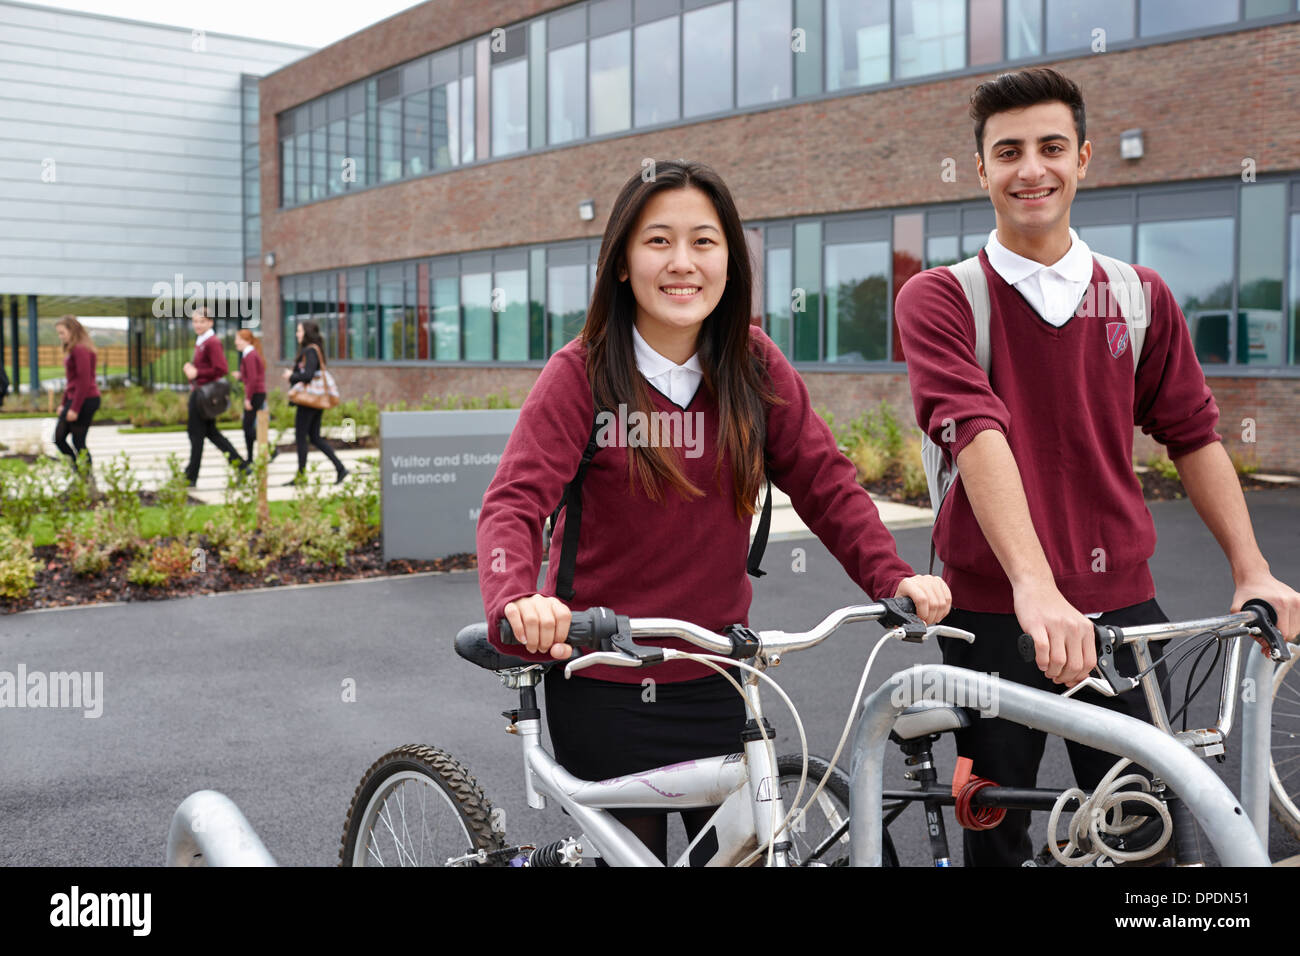 Adolescent avec des amis en dehors de l'école cycles Banque D'Images